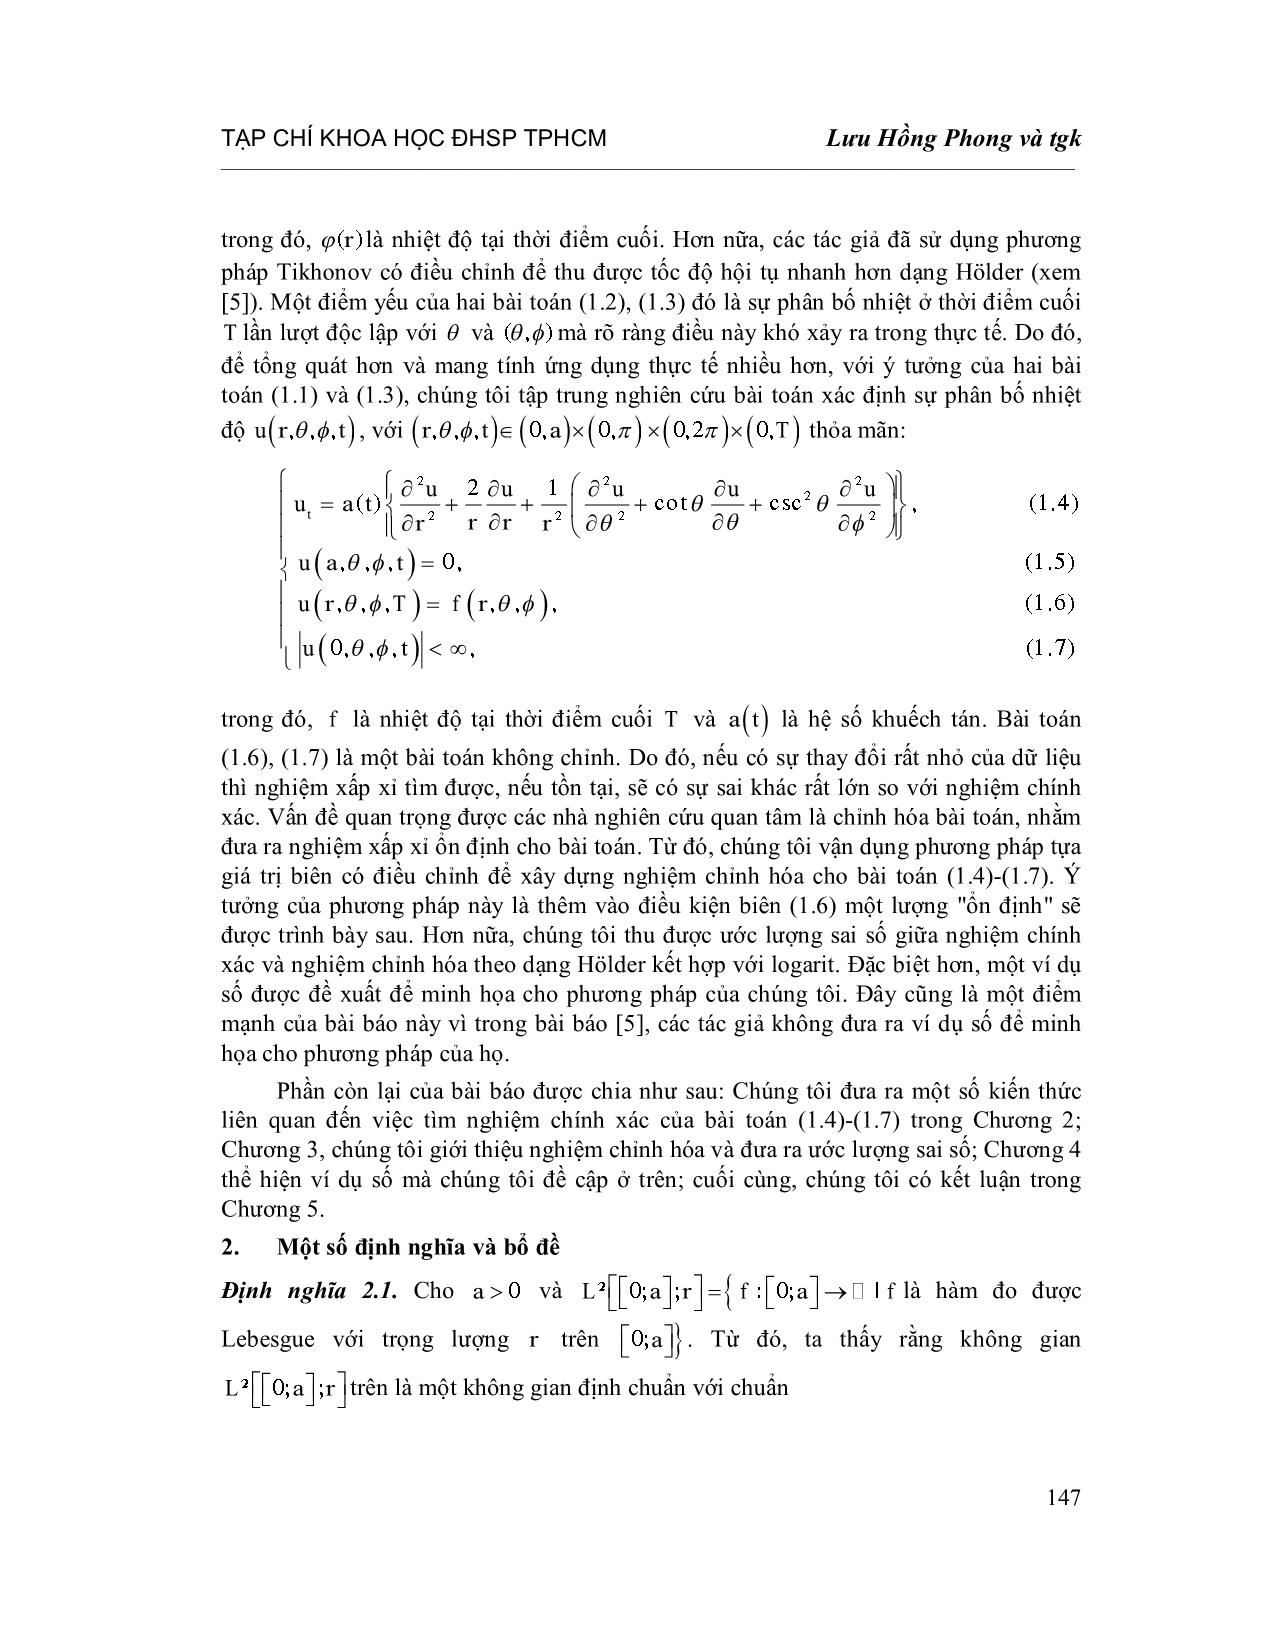 Chỉnh hóa bài toán nhiệt ngược với hệ số phụ thuộc thời gian trong tọa độ cầu trang 3